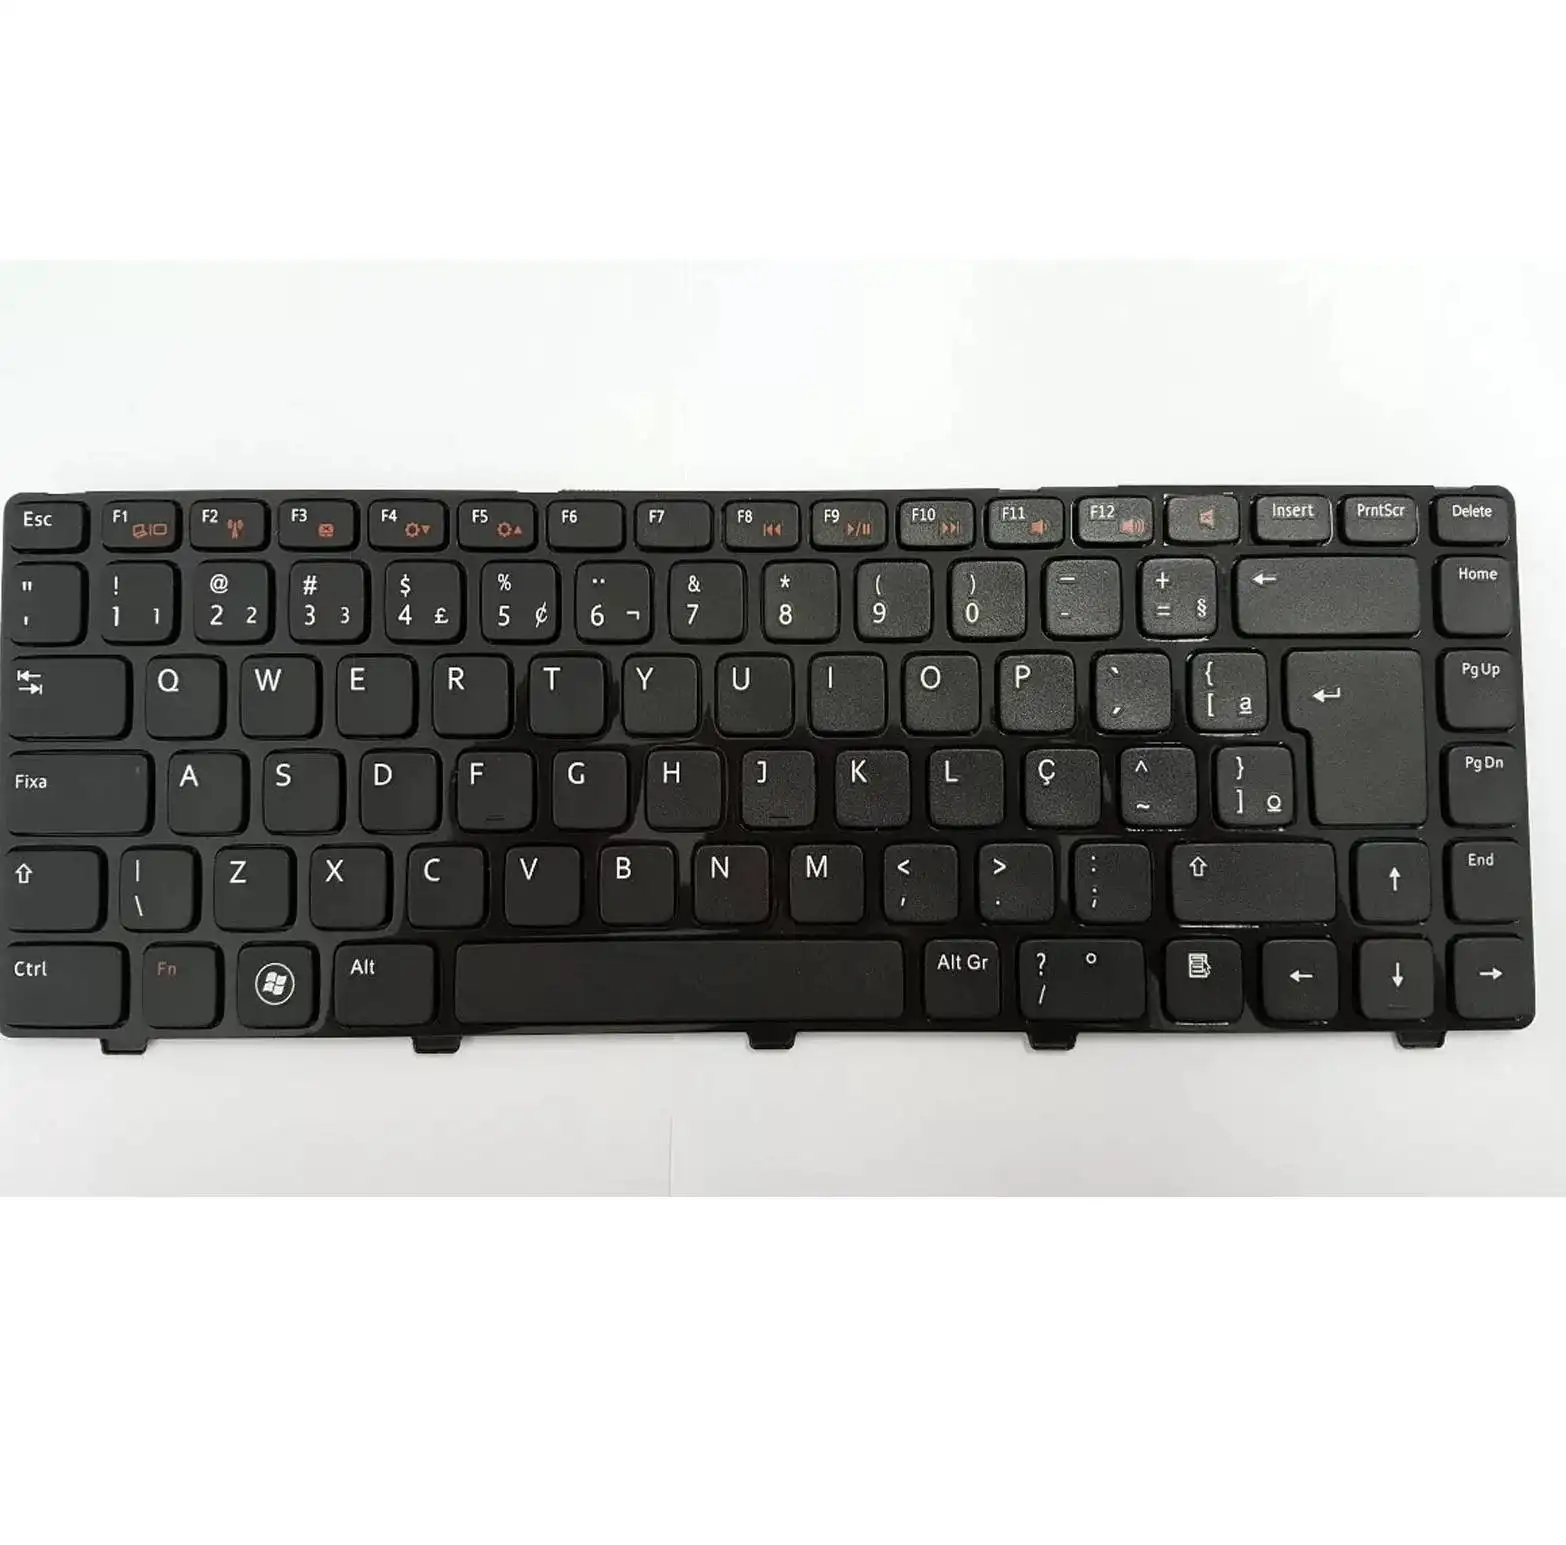 Оптовая продажа Клавиатура для ноутбука Dell Inspiron 14R N4050 M4040 N4110 N4120 M4110 Клавиатура ноутбука BR Макет Бразилия португальский